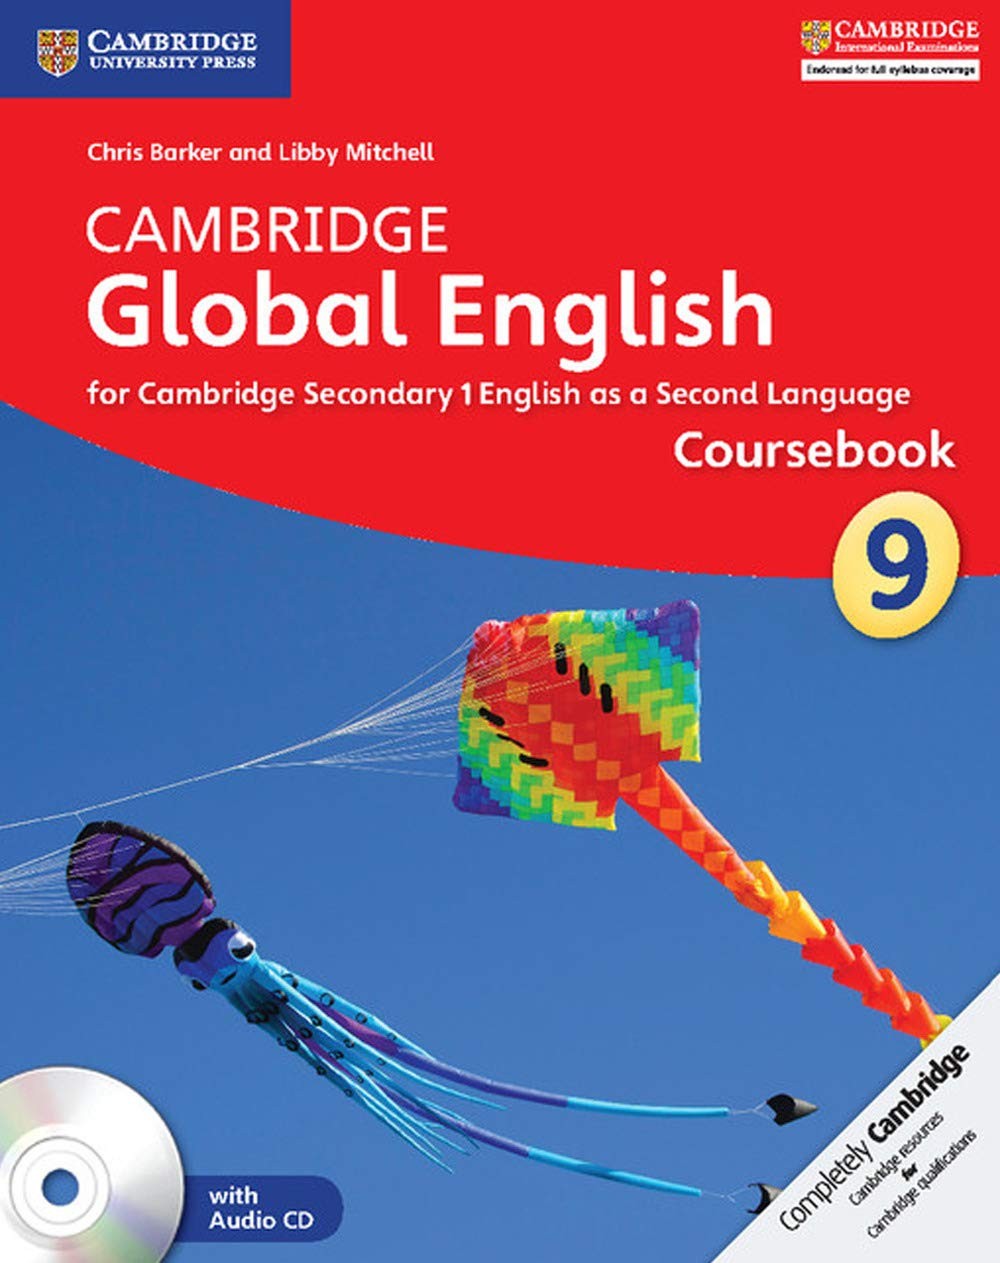 Cambridge Global English Coursebook 9